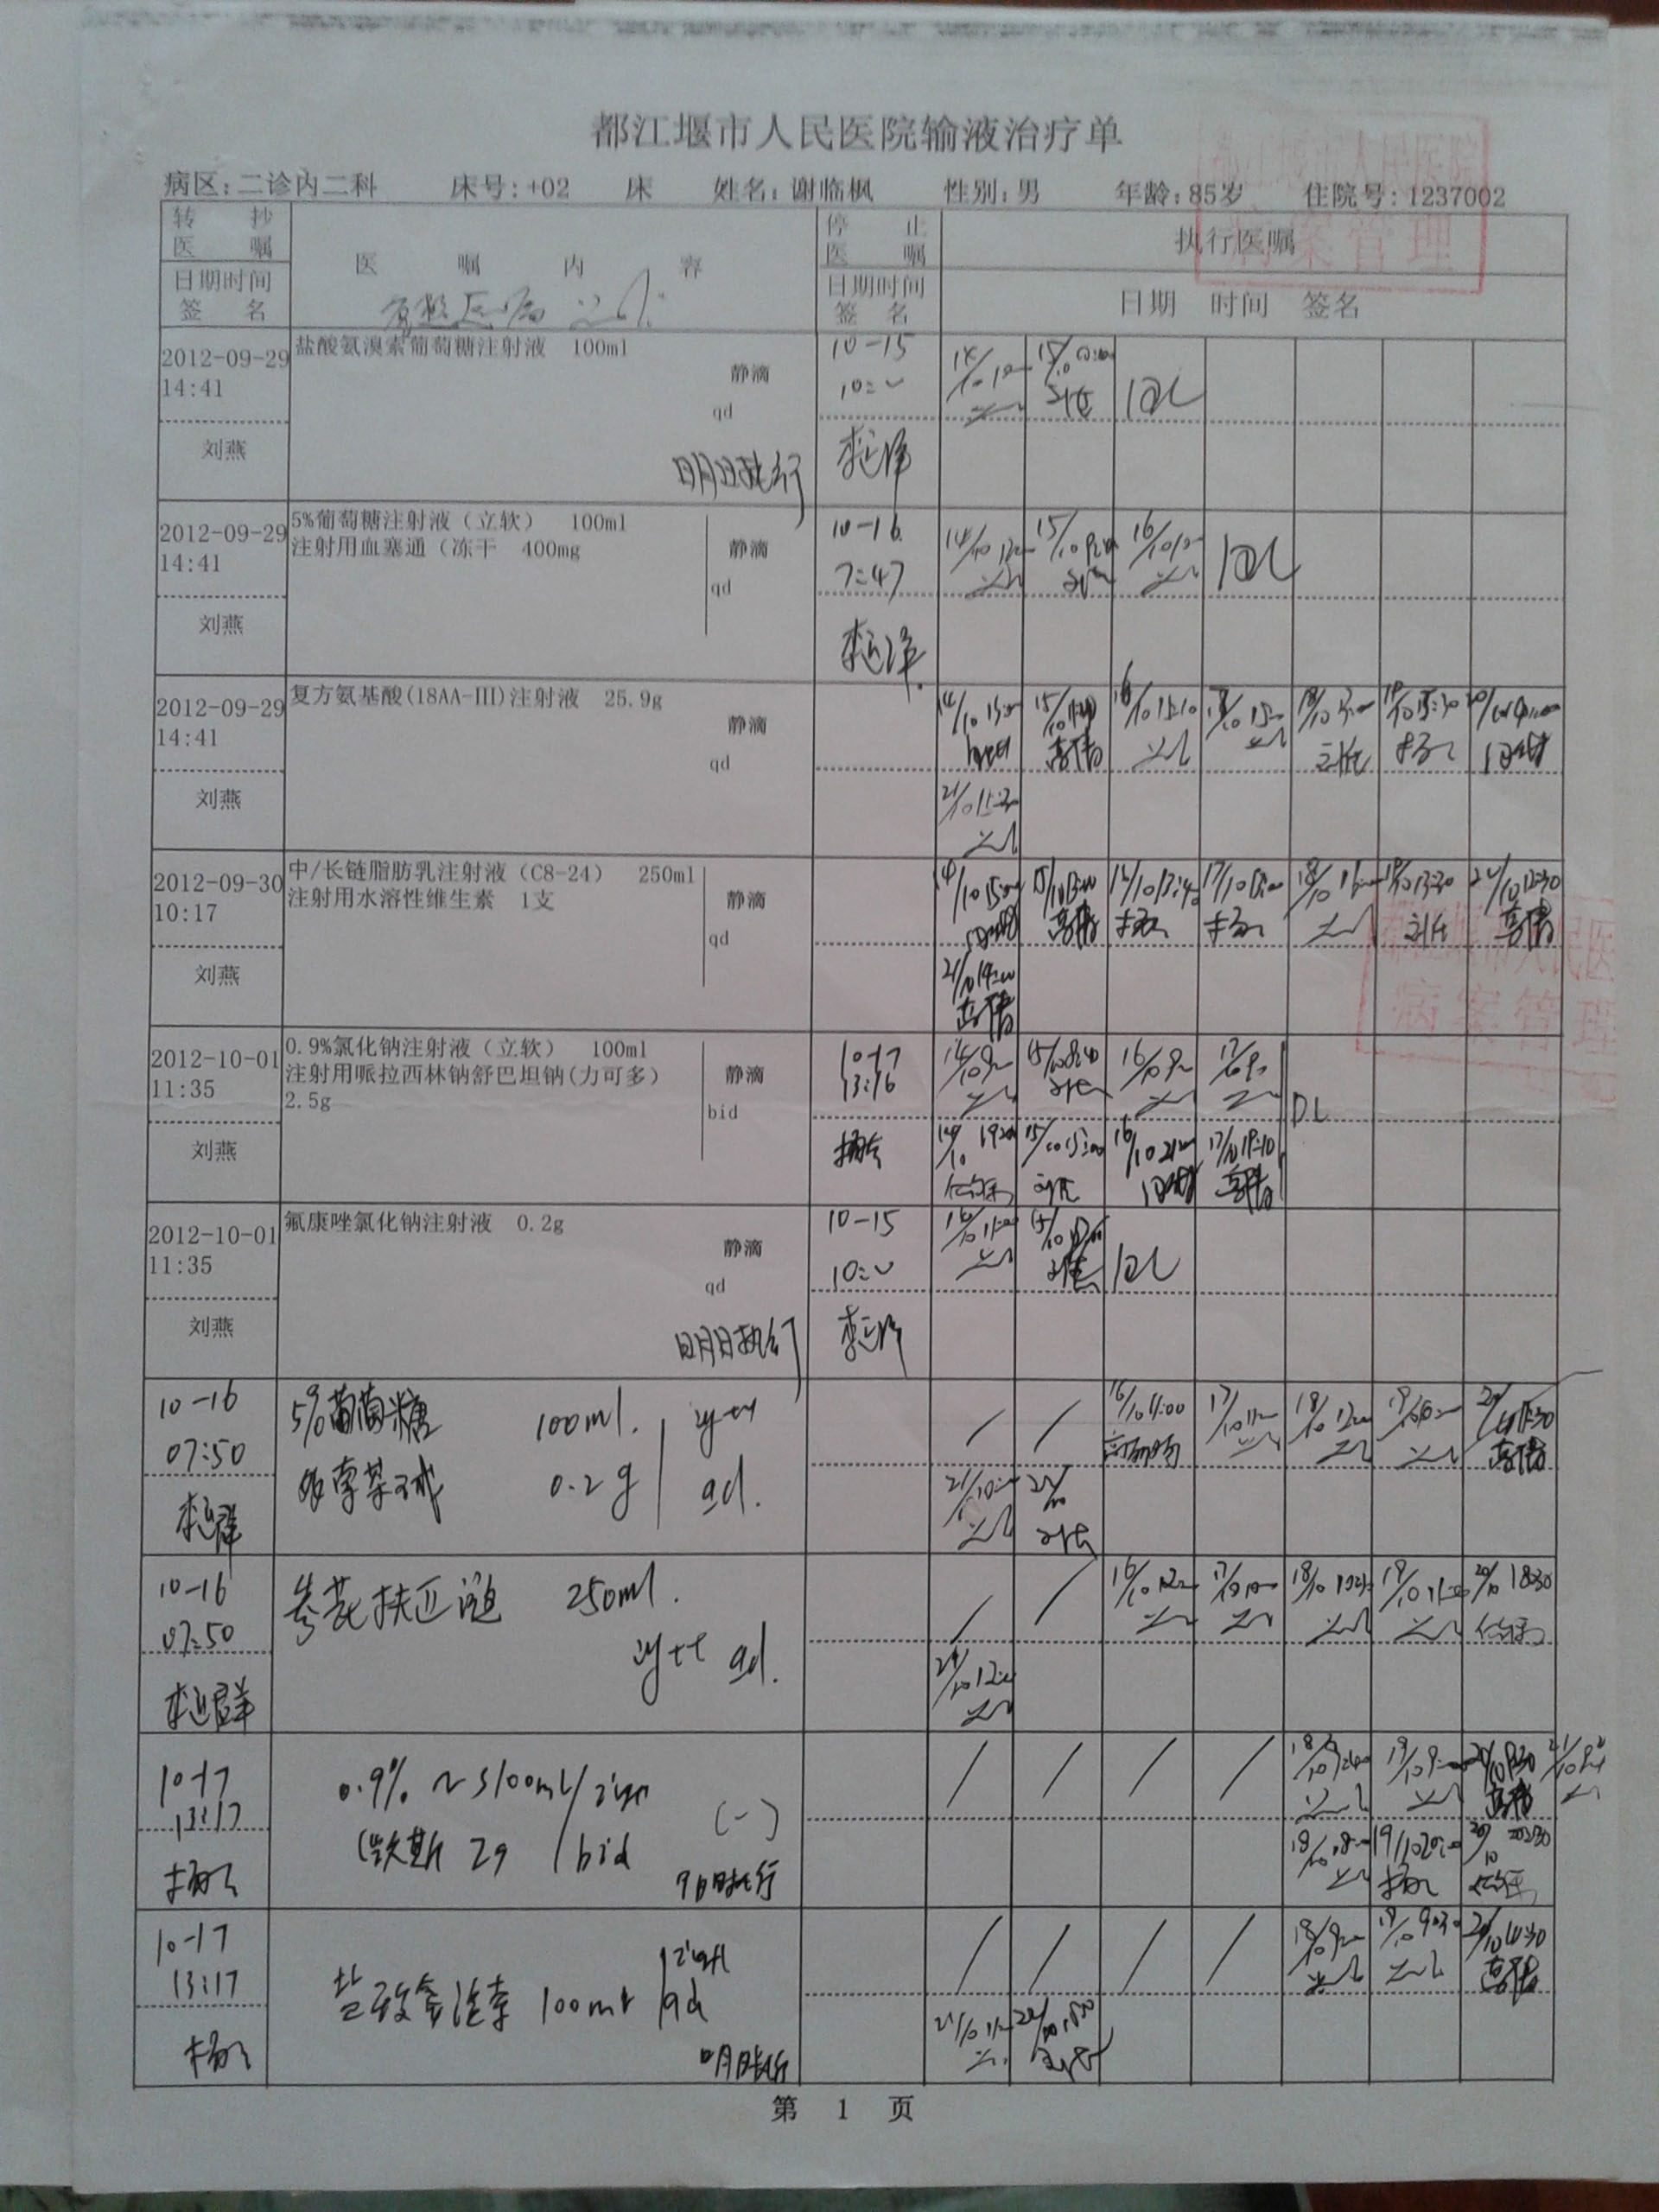 2012-10-15 医院输液执行单(发网站).jpg